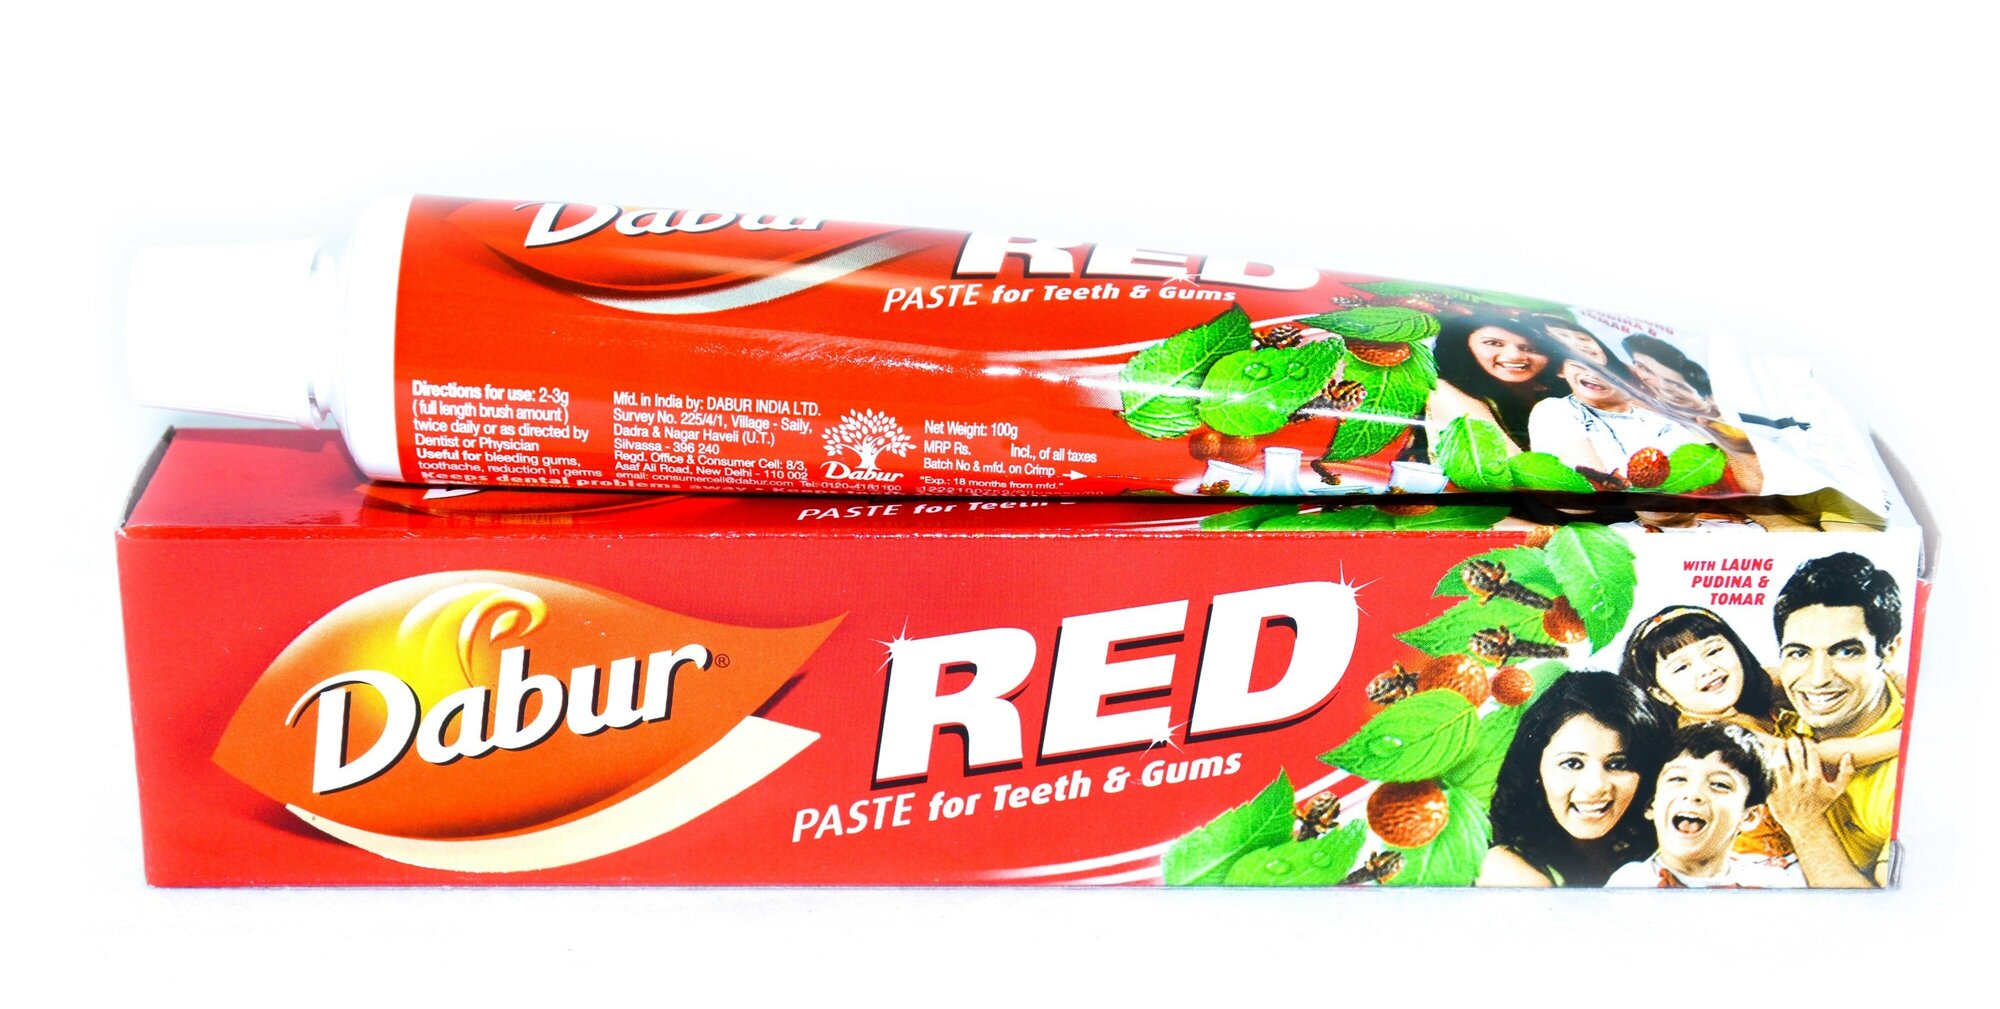 Зубная паста "Красная" Дабур (Dabur Red) 100 гр.